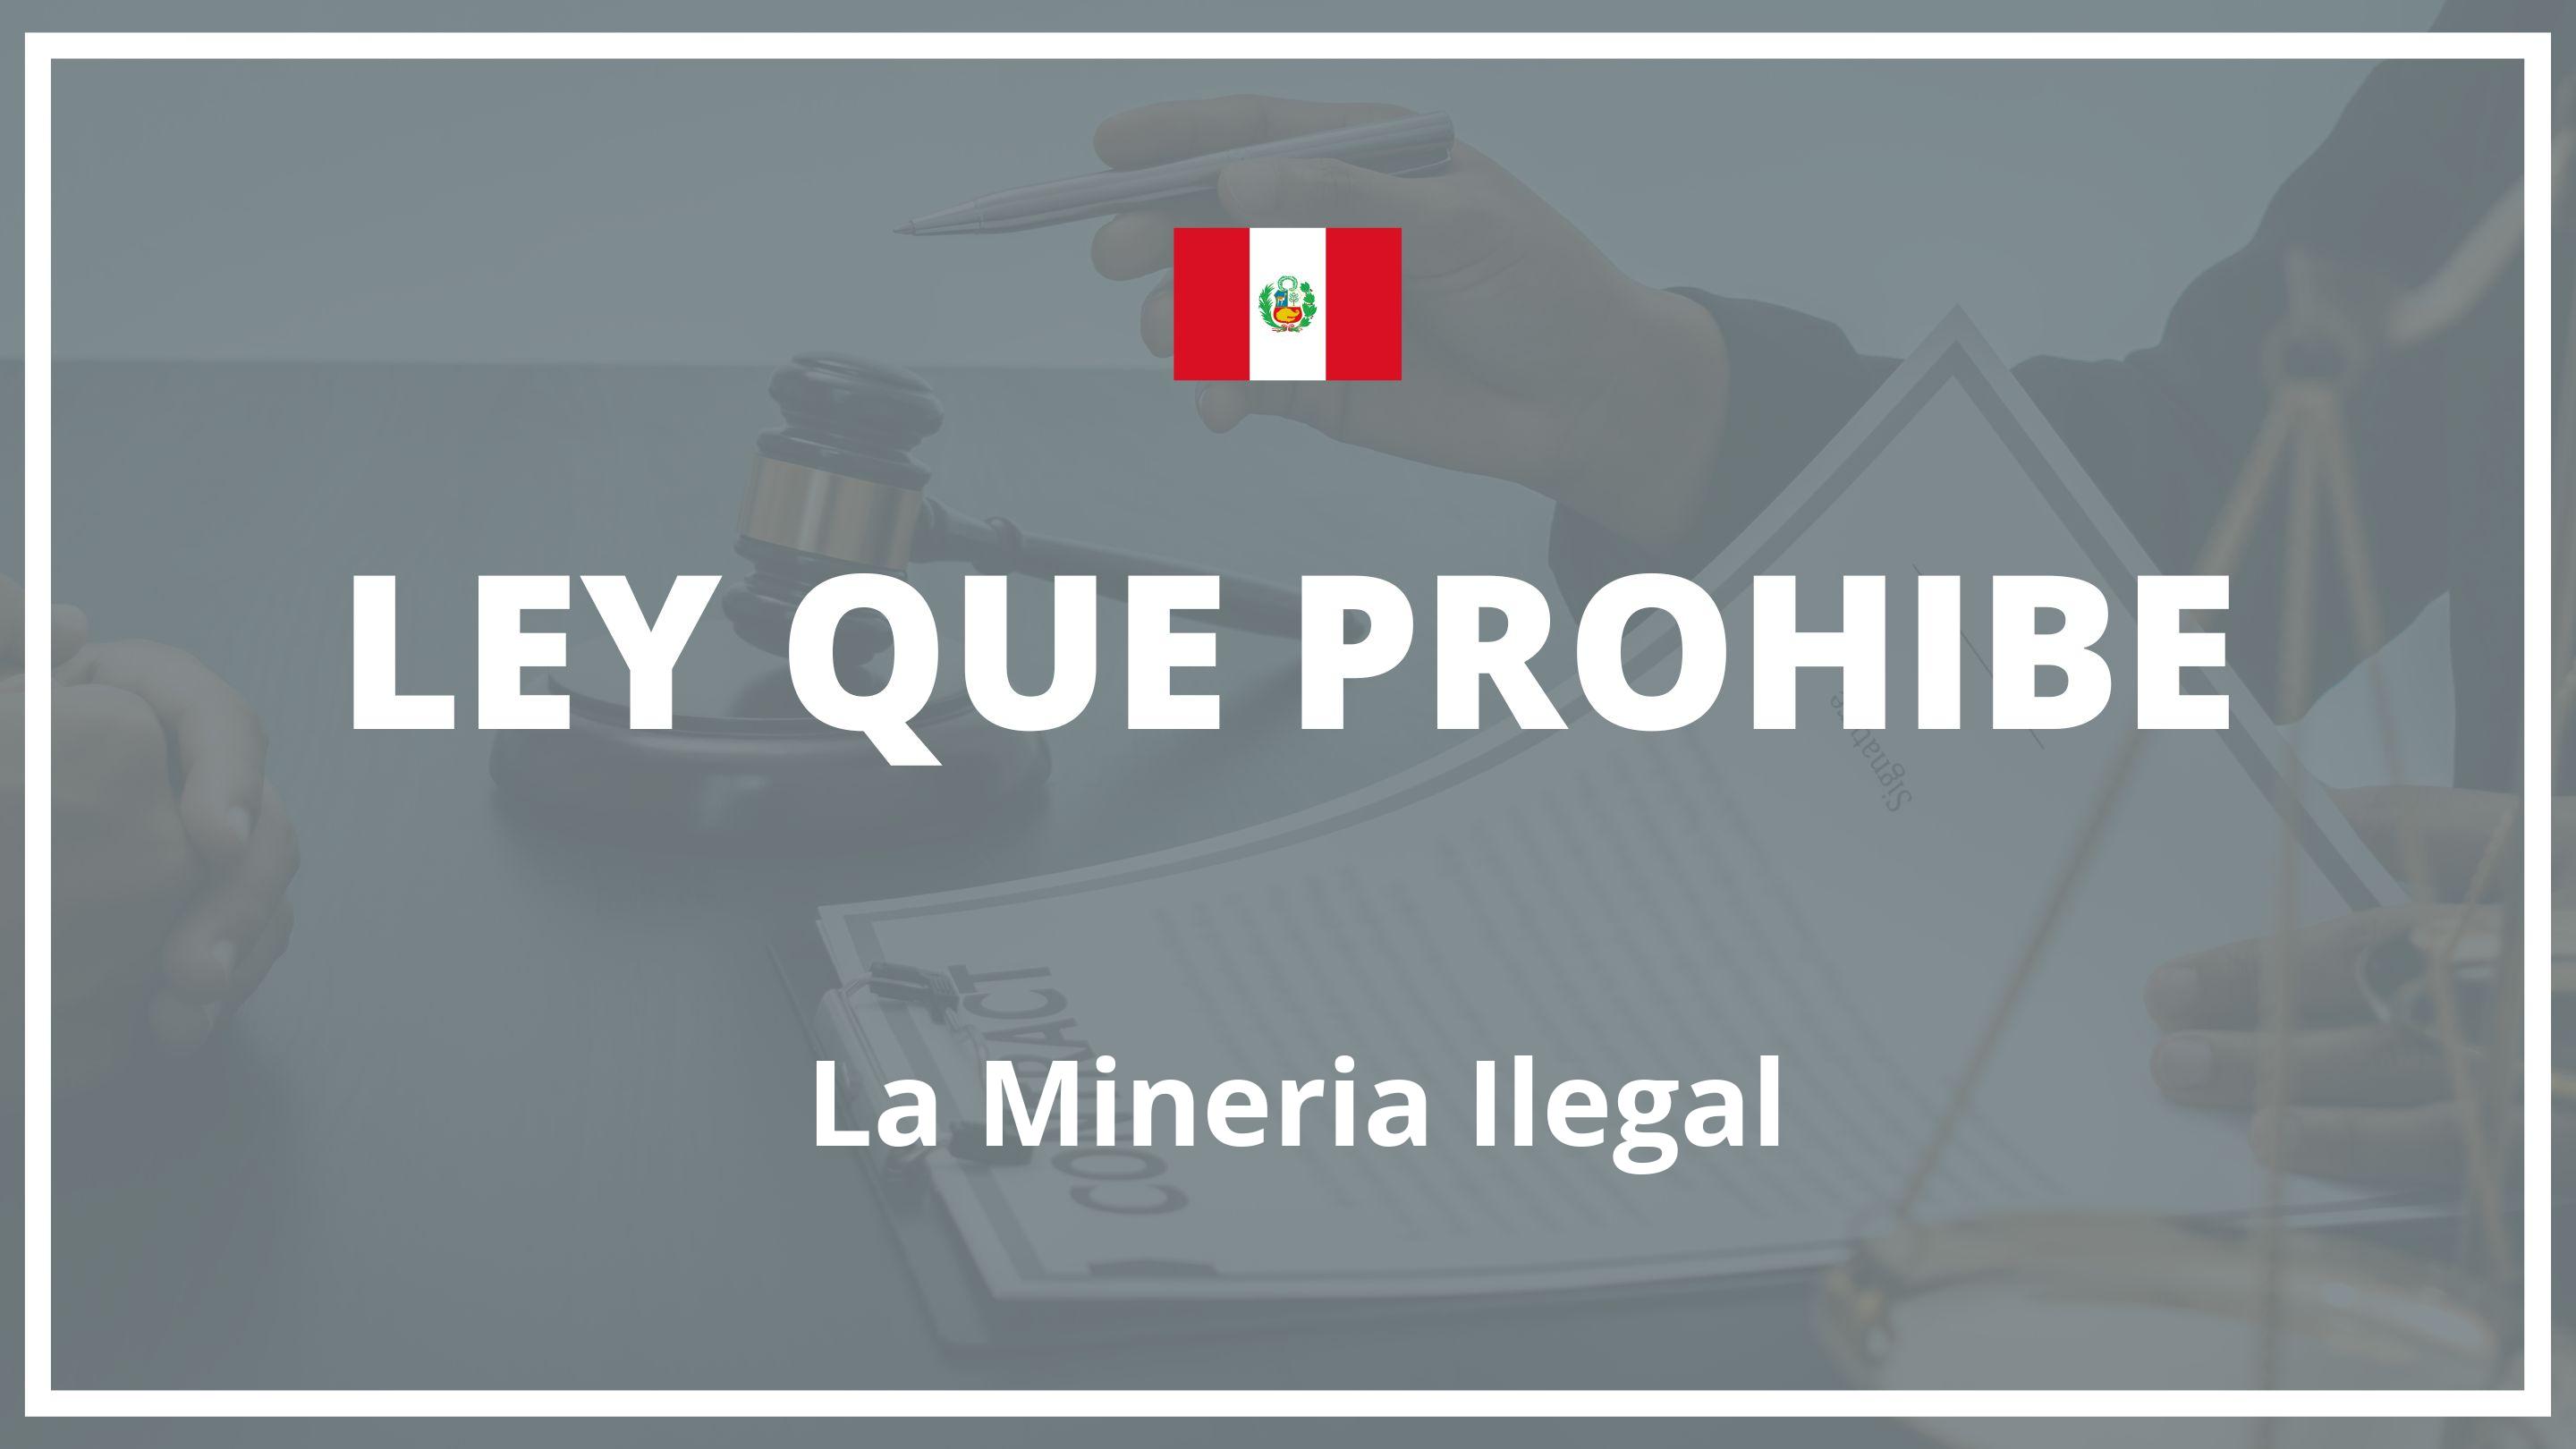 Ley que prohibe la mineria ilegal Peru